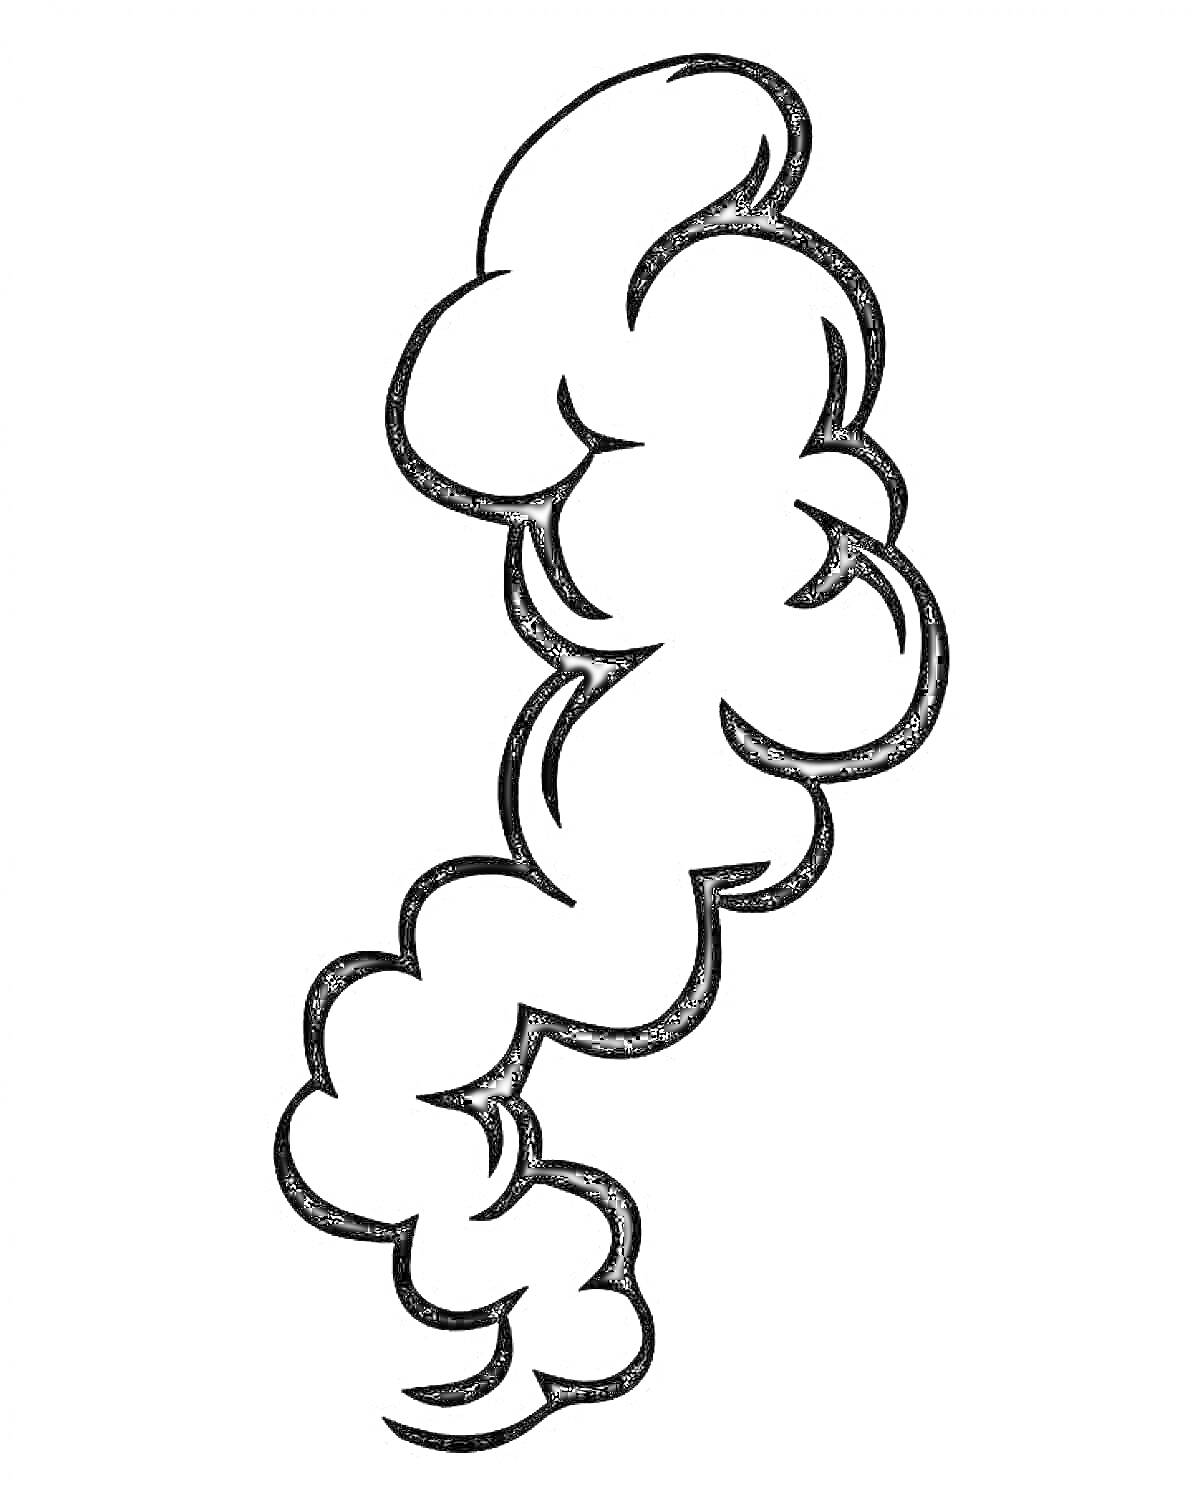 Раскраска Линия дыма, состоящая из завитков и облачков